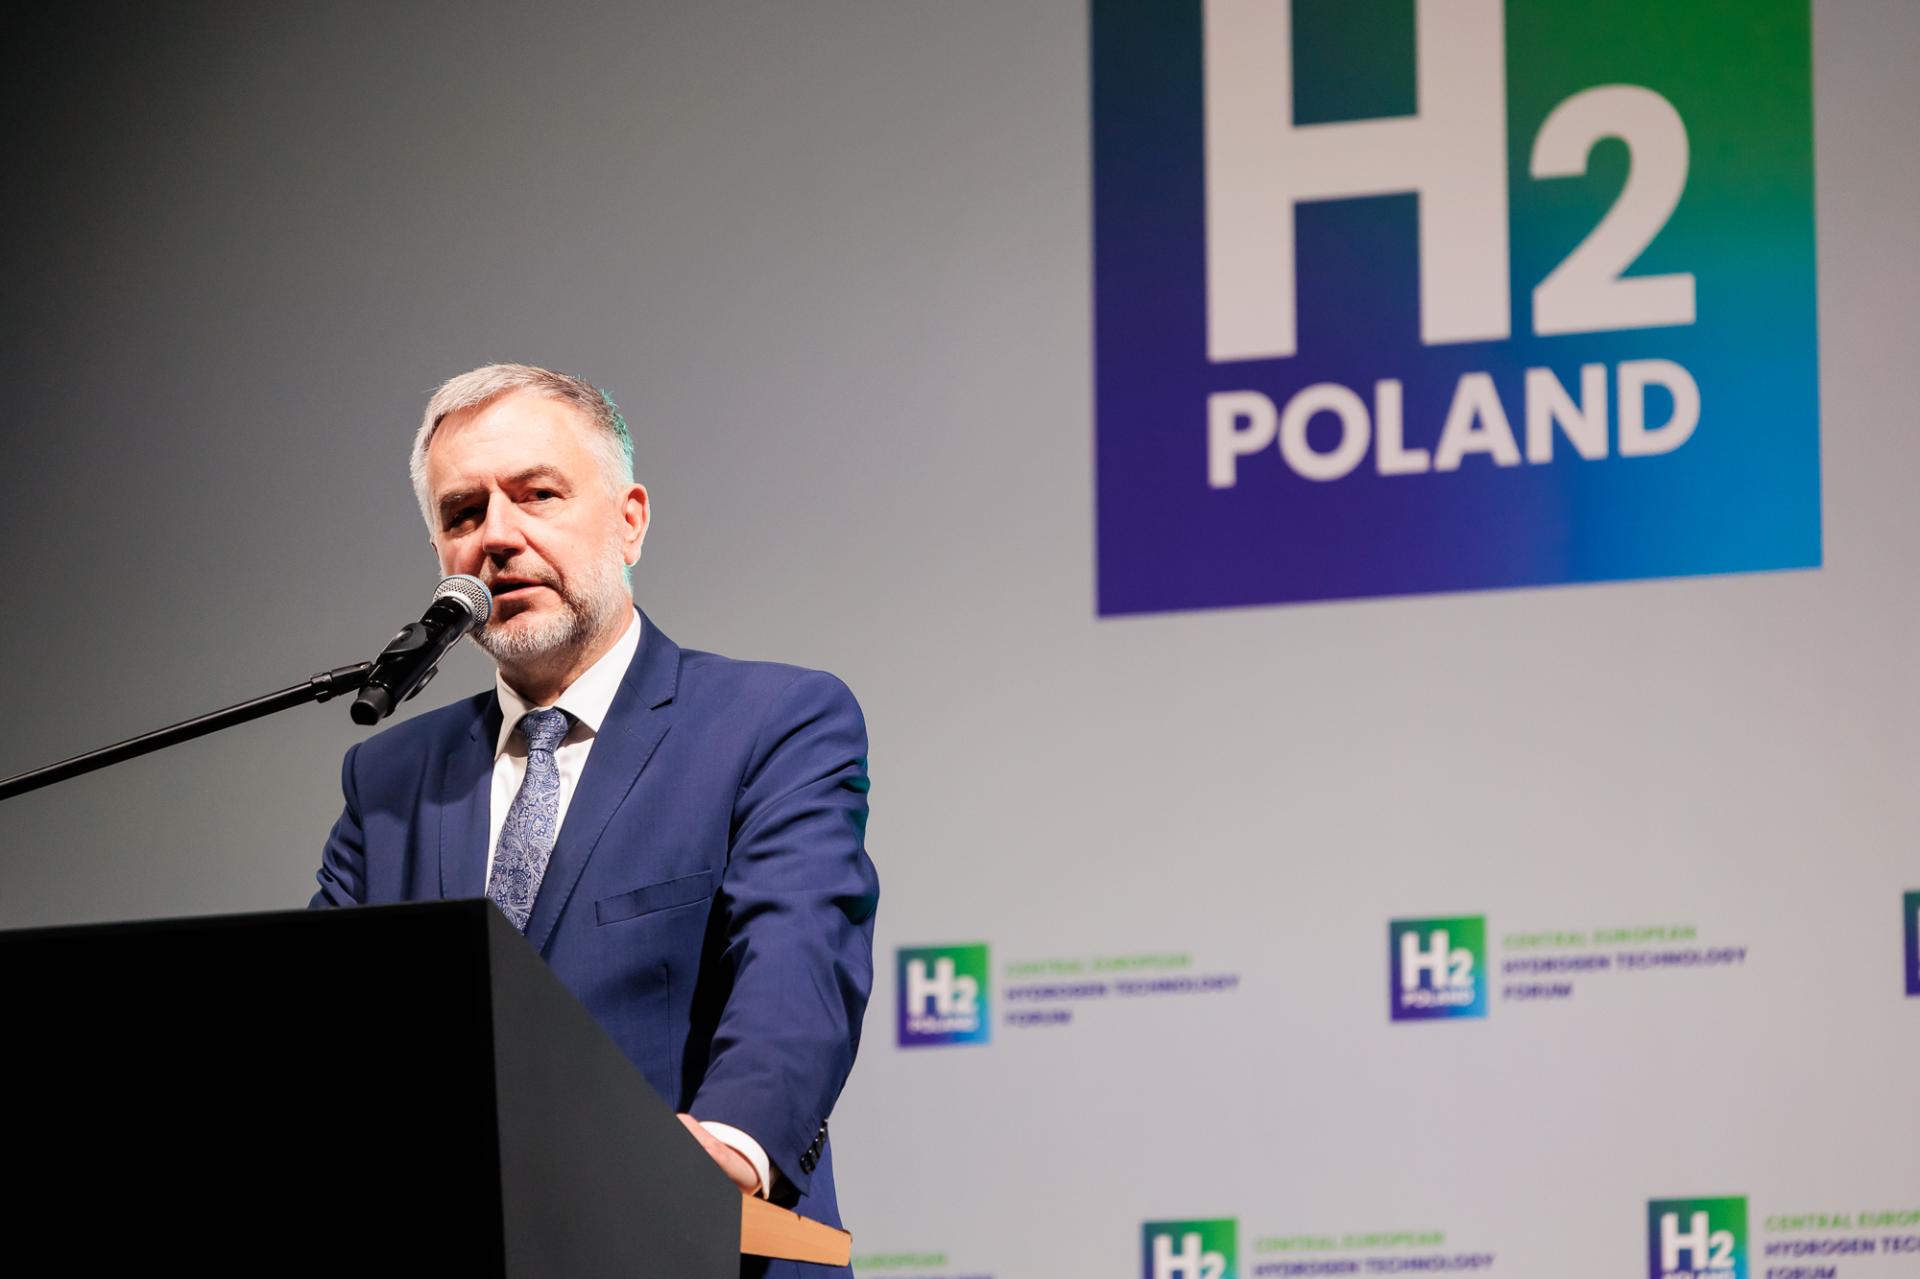 Marszałek Marek Woźniak na H2Poland: Poszukujemy zastosowań wodoru  - zobacz więcej